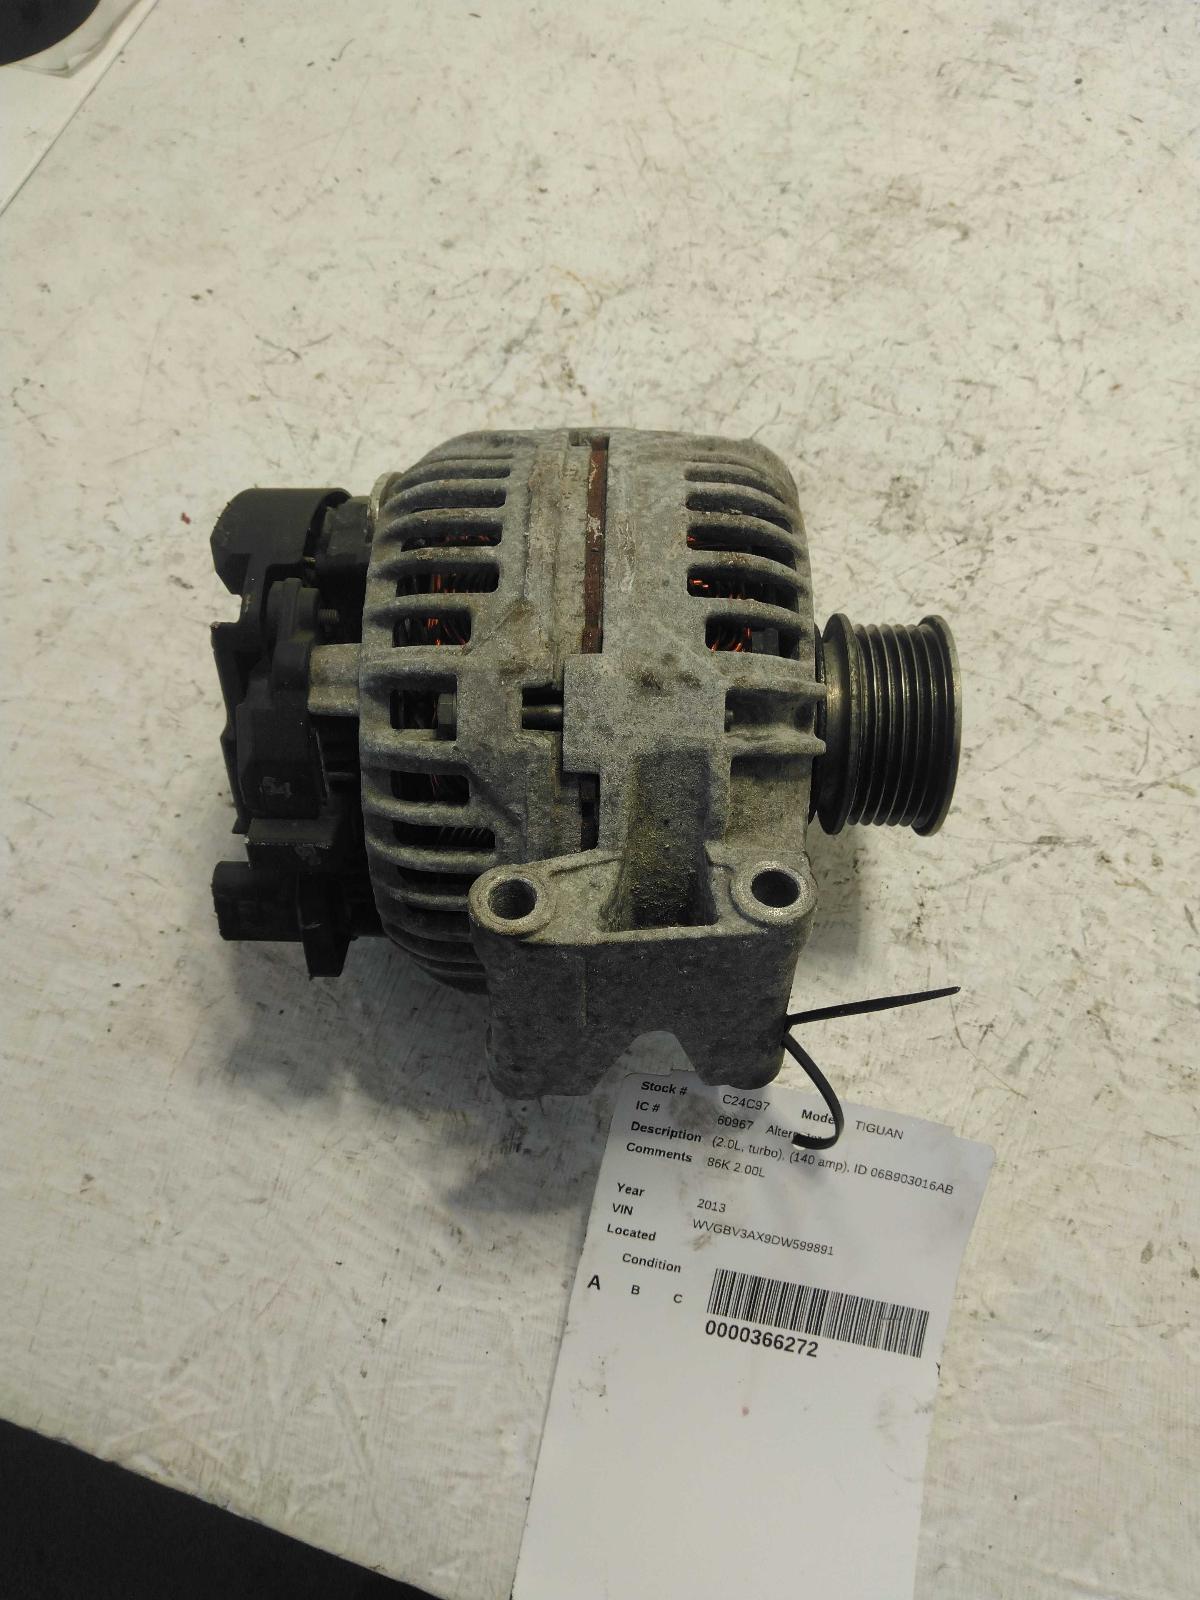 Used Alternator fits: 2013 Volkswagen Tiguan exc. City 2.0L diesel 140 amp ID 06